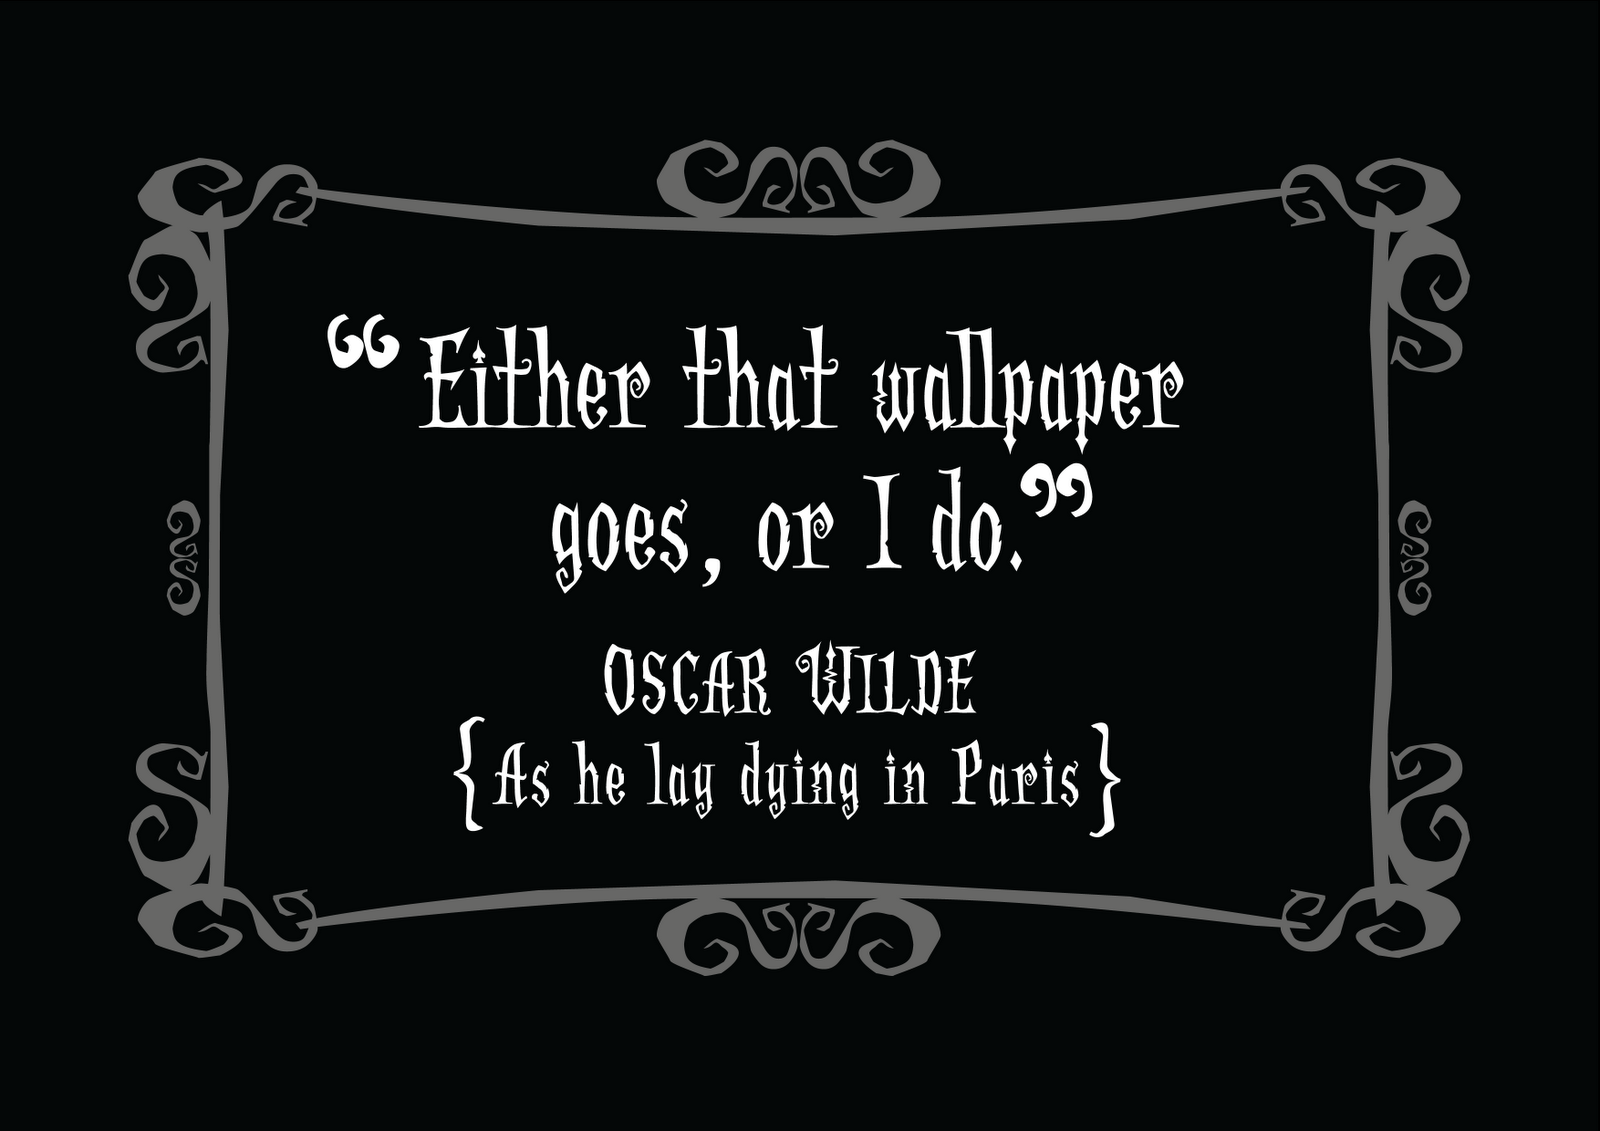 oscar wilde quotes